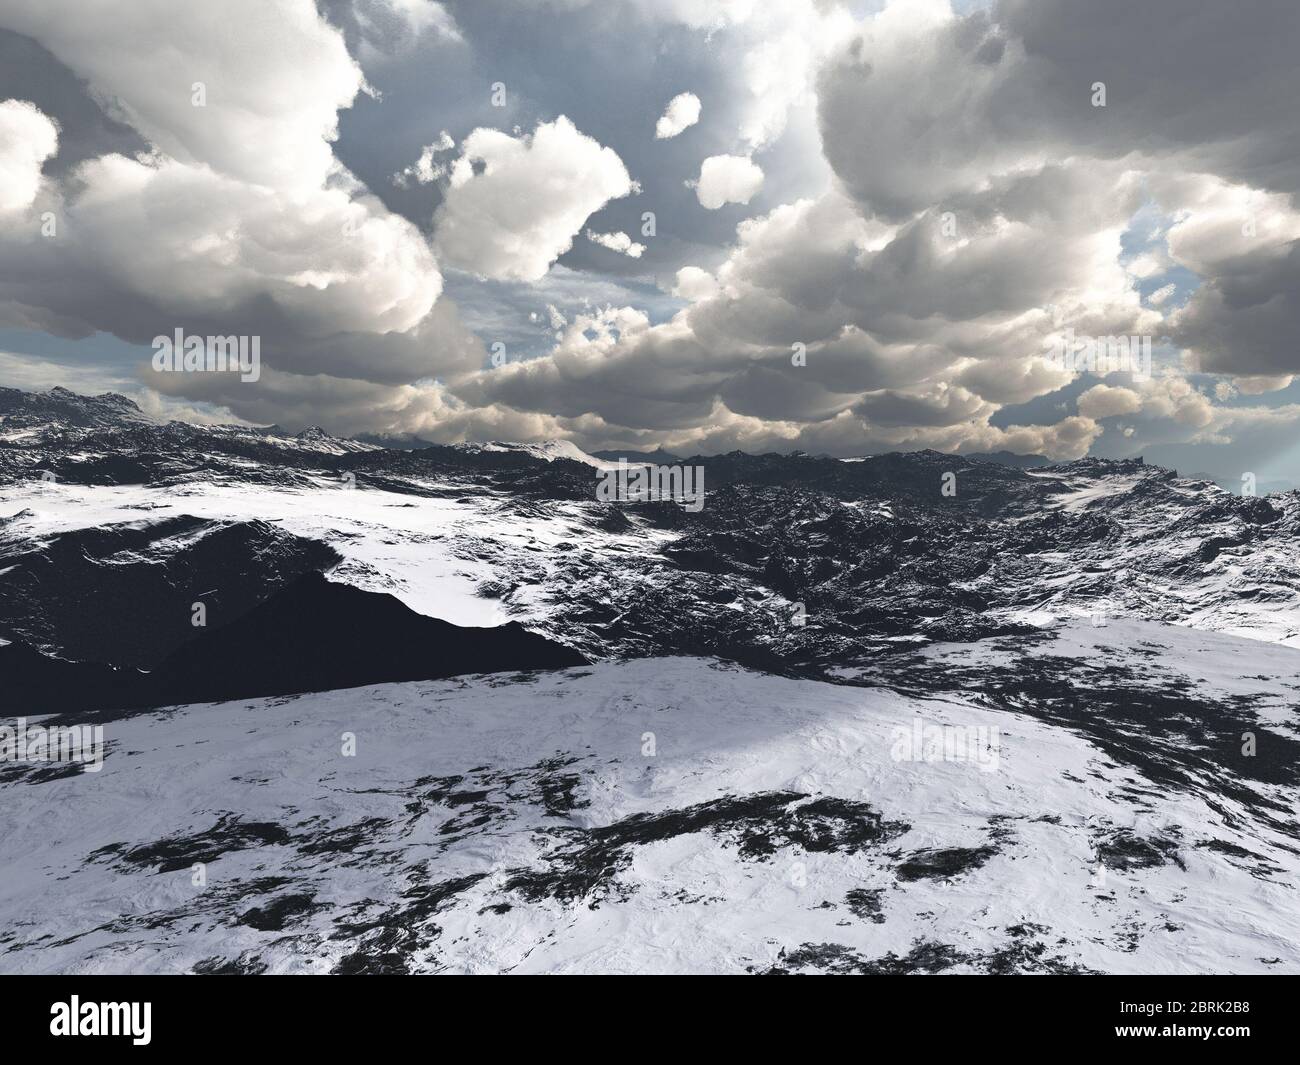 Alpine landscape in the Alps Stock Photo